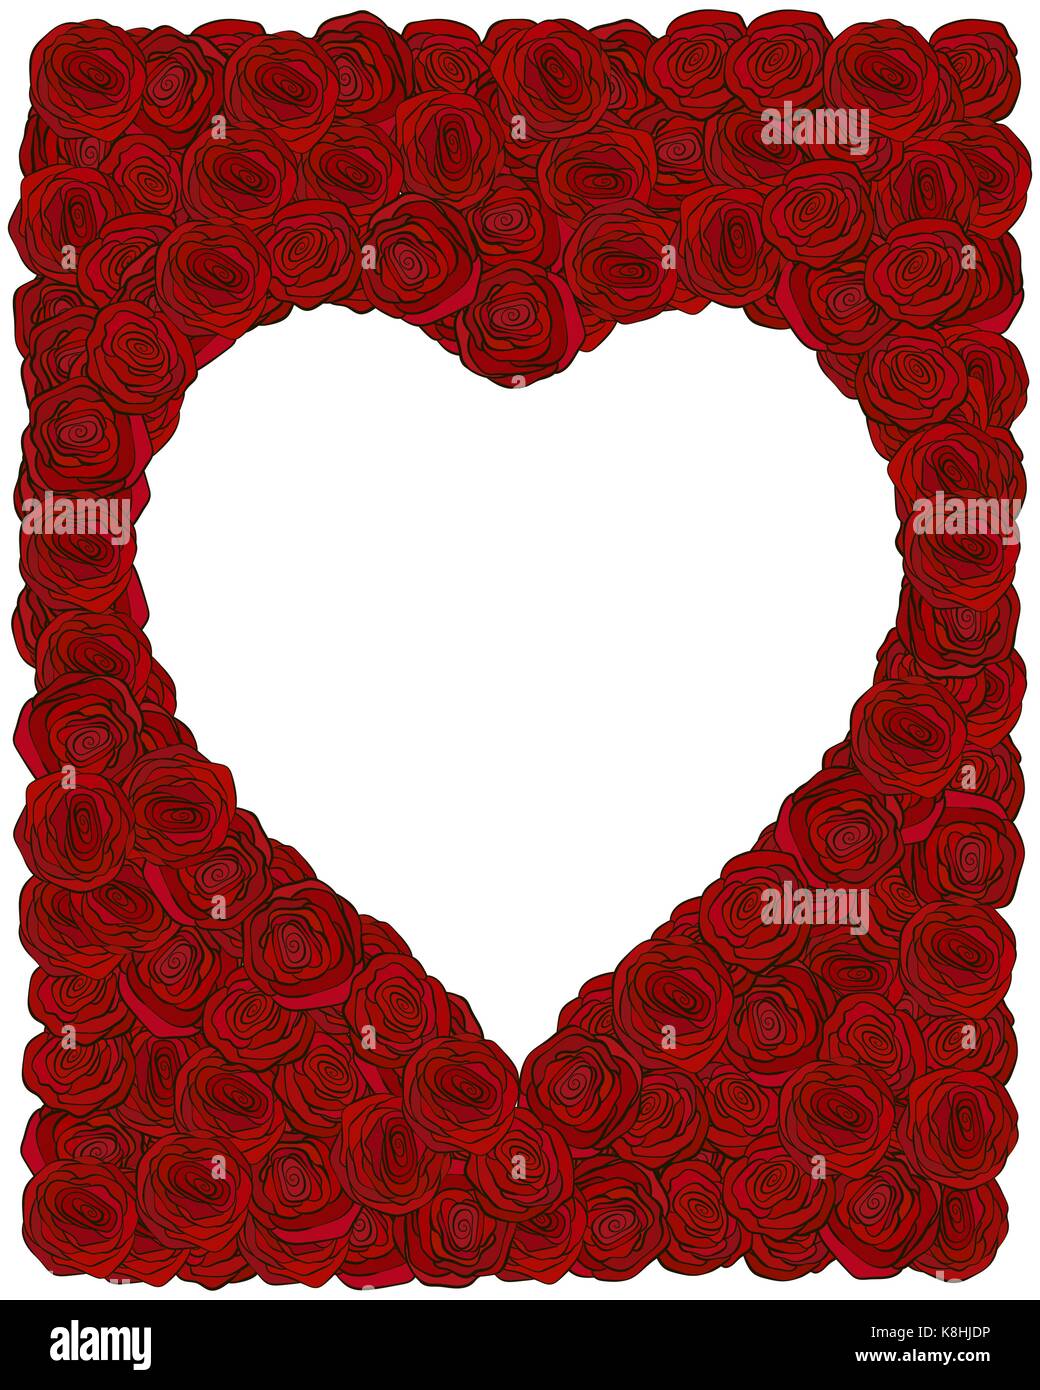 Rahmen aus roten Rosen mit Herz-Form Platz für Text für Valentinstag Dekoration oder Hochzeit Design Stock Vektor